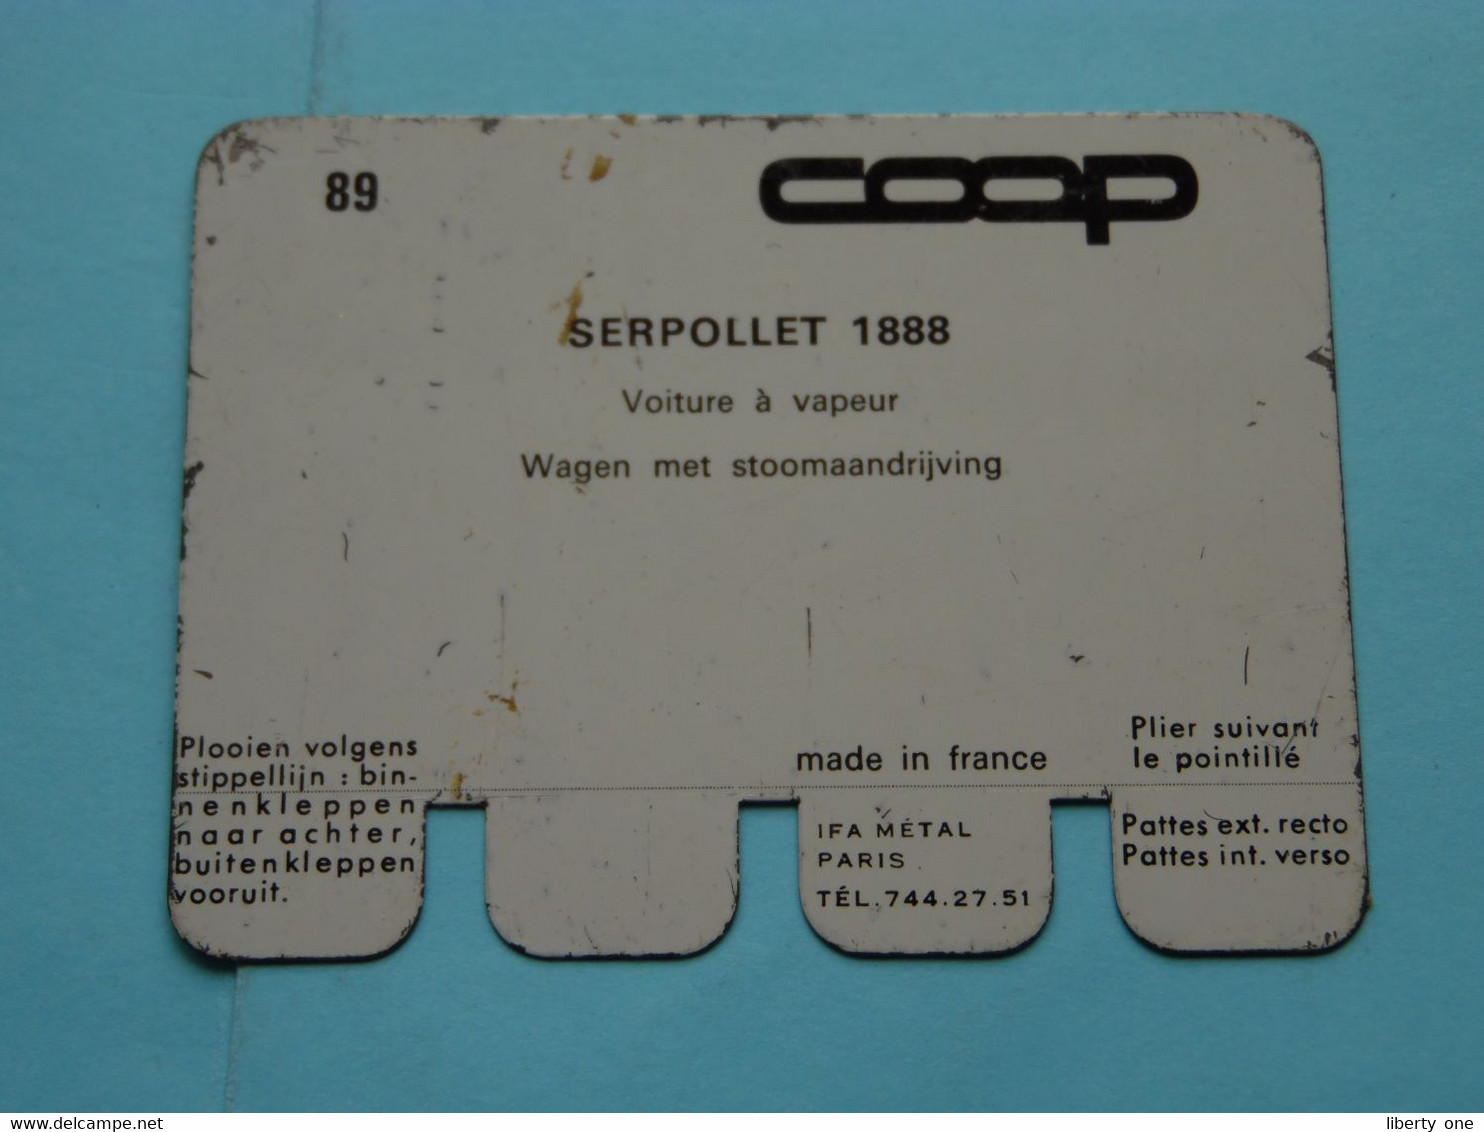 SERPOLLET 1888 - Coll. N° 89 NL/FR ( Plaquette C O O P - Voir Photo - IFA Metal Paris ) ! - Plaques En Tôle (après 1960)